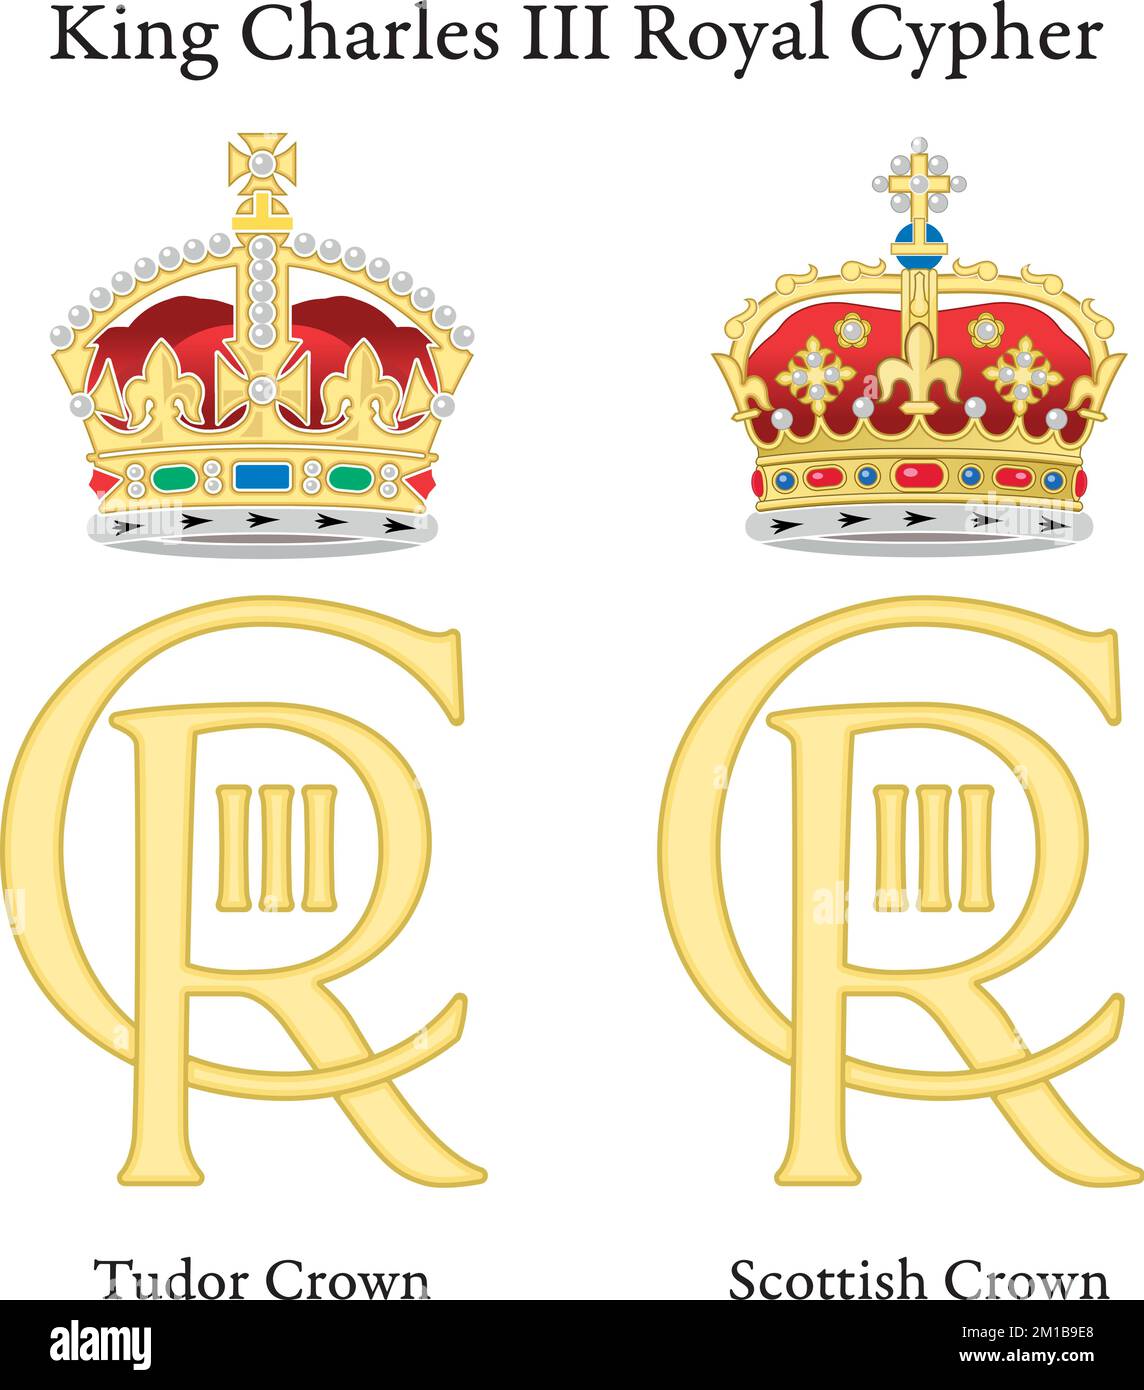 Nuovo Cipher reale del re Carlo terzo con Tudor Crown e Scottish Crown, anno 2022, Regno Unito, illustrazione vettoriale Illustrazione Vettoriale